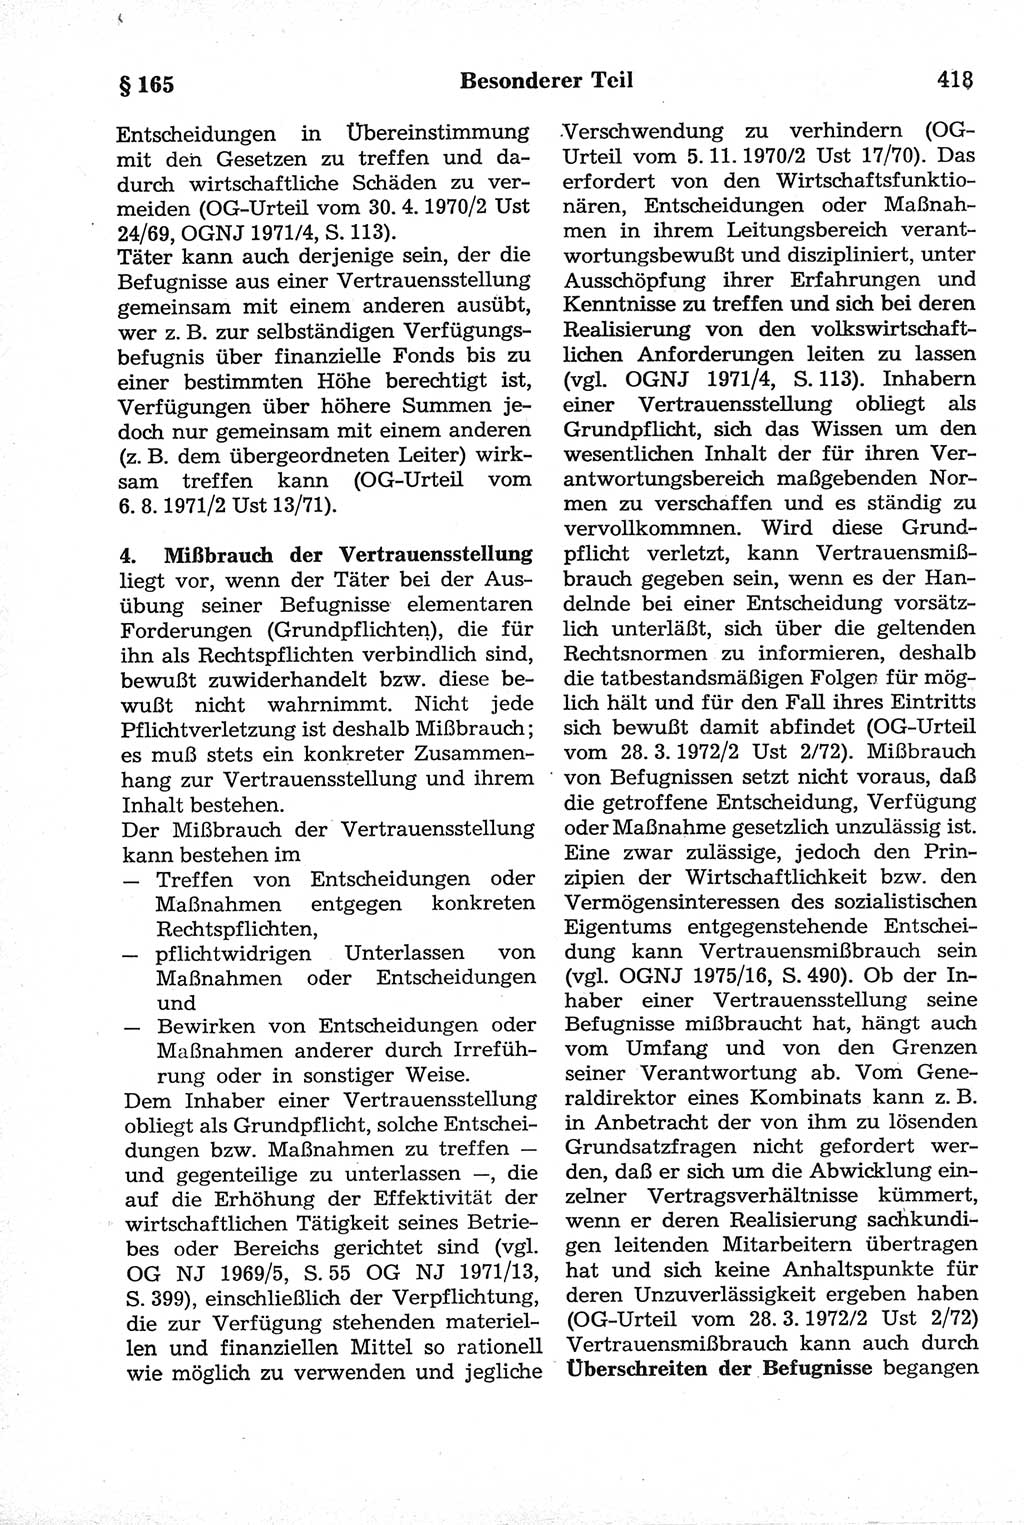 Strafrecht der Deutschen Demokratischen Republik (DDR), Kommentar zum Strafgesetzbuch (StGB) 1981, Seite 418 (Strafr. DDR Komm. StGB 1981, S. 418)